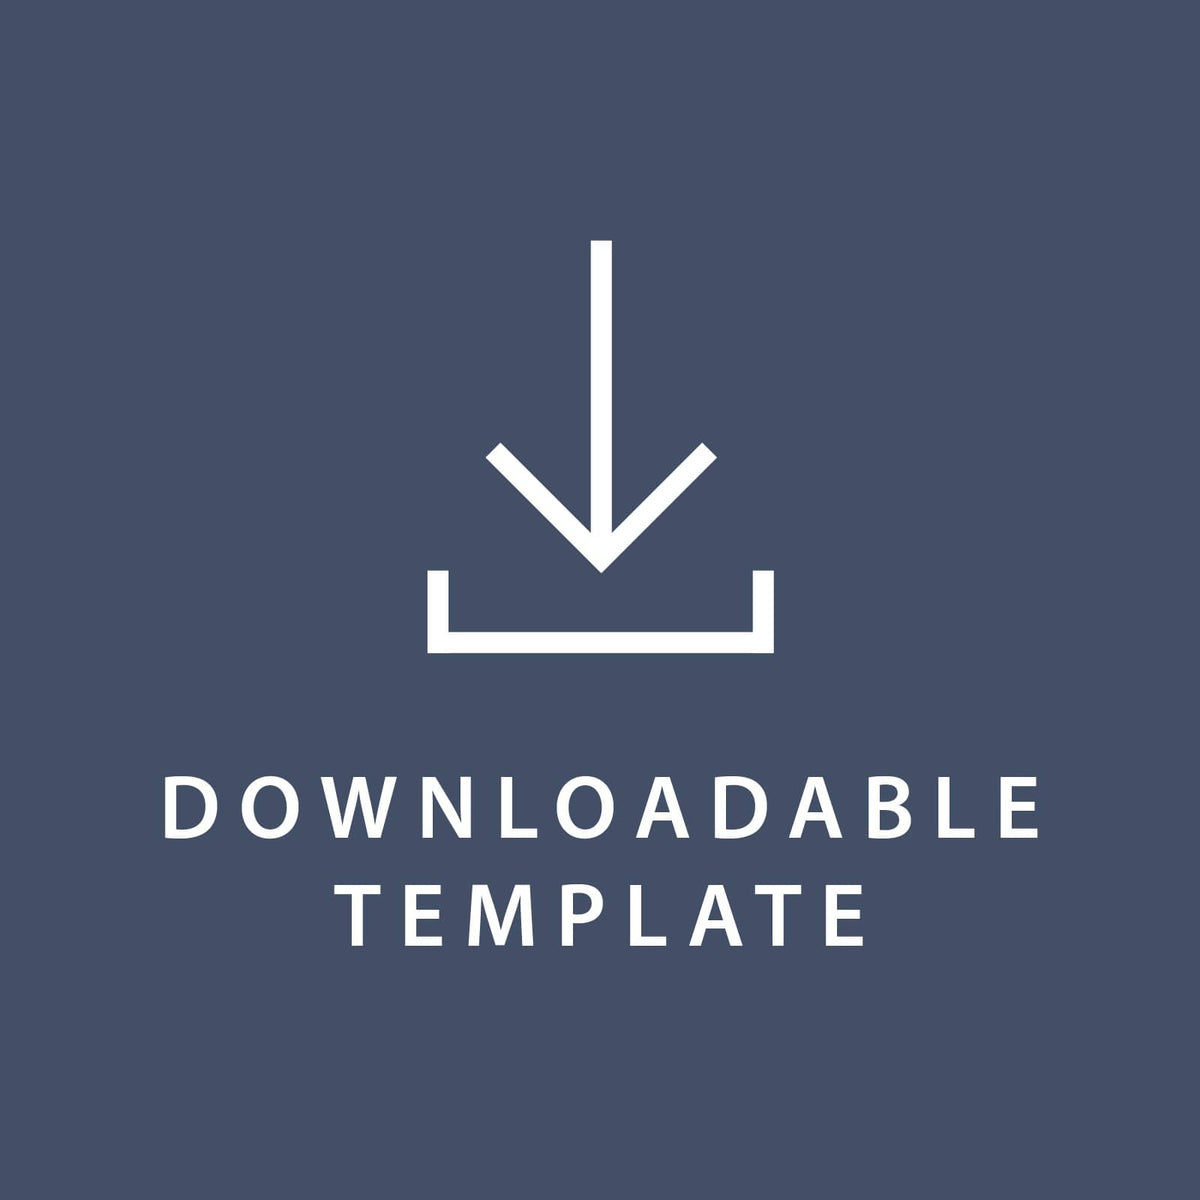 Template for 5.75 x 8.75 Invitations Gartner Studios Template tmplt0359